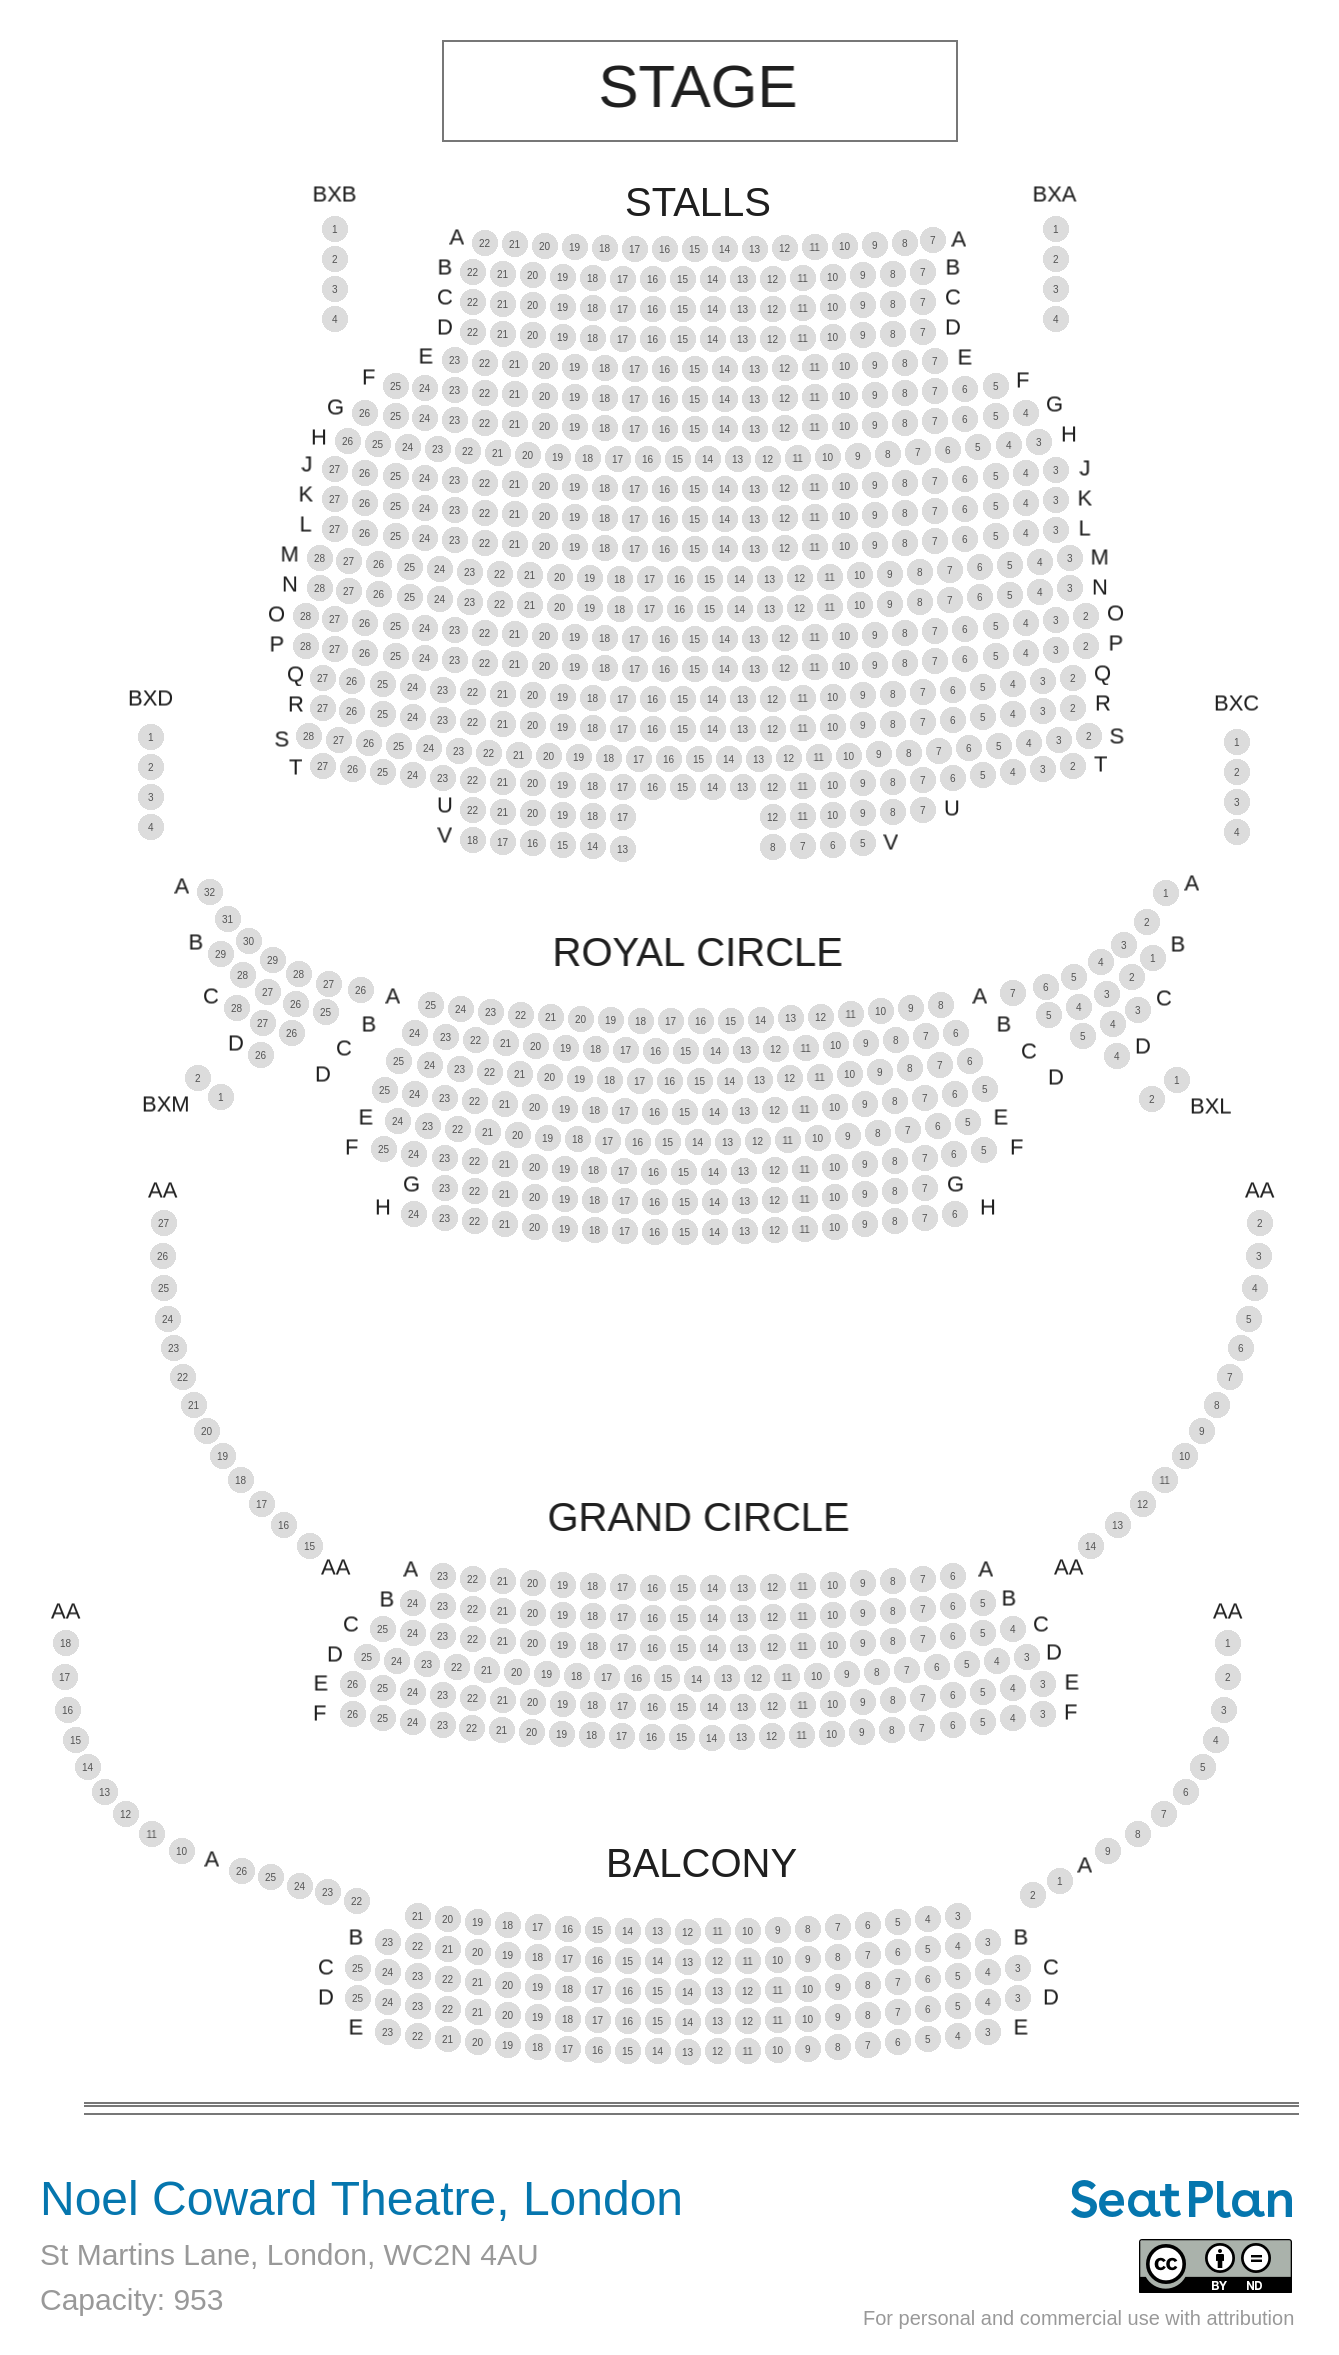 Noel Coward Theatre seating plan